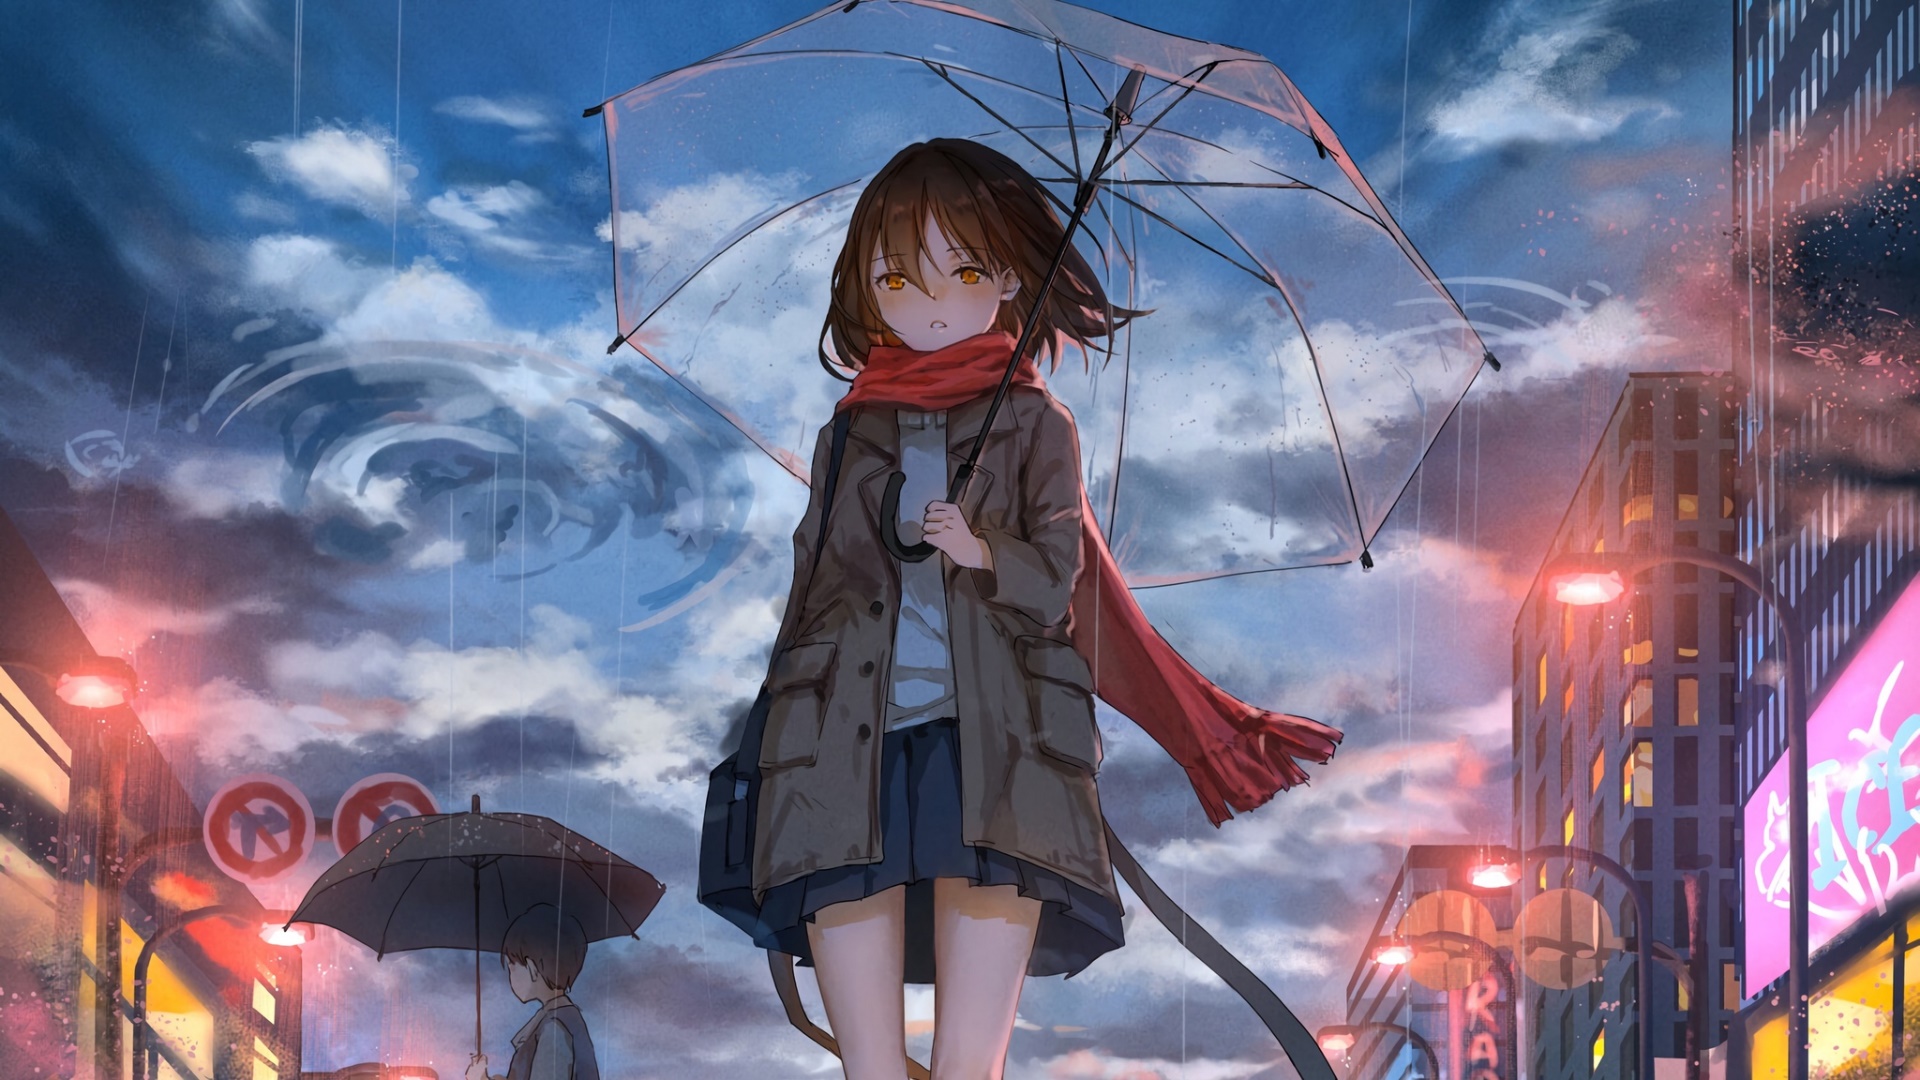 Wallpaper anime girl leaves wind  Anime wallpaper, Hd anime wallpapers,  Blue anime